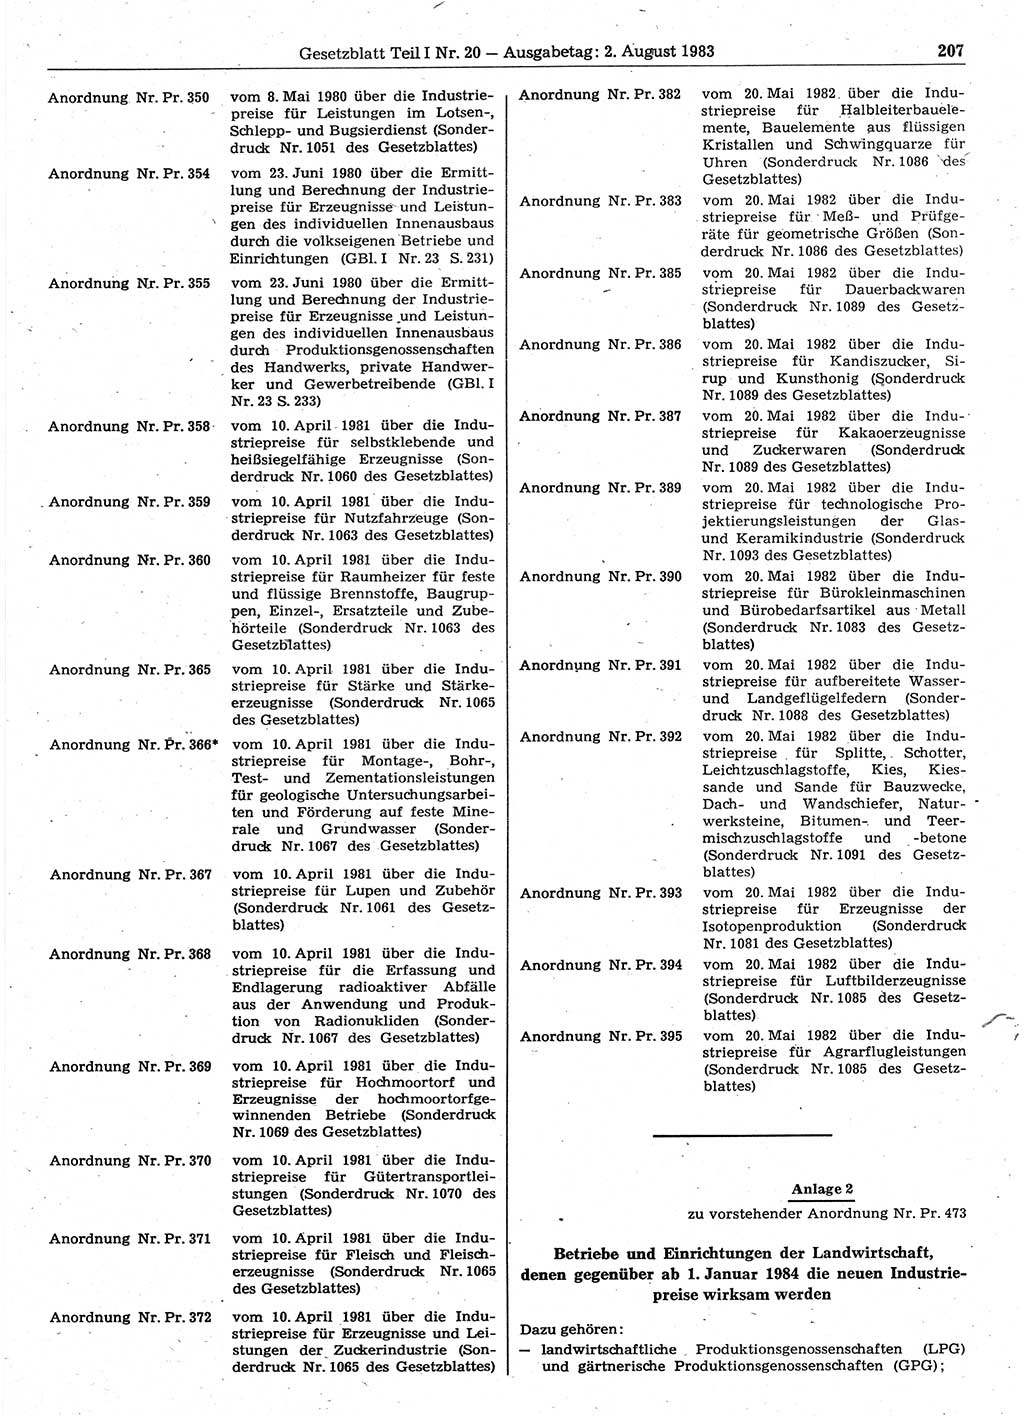 Gesetzblatt (GBl.) der Deutschen Demokratischen Republik (DDR) Teil Ⅰ 1983, Seite 207 (GBl. DDR Ⅰ 1983, S. 207)